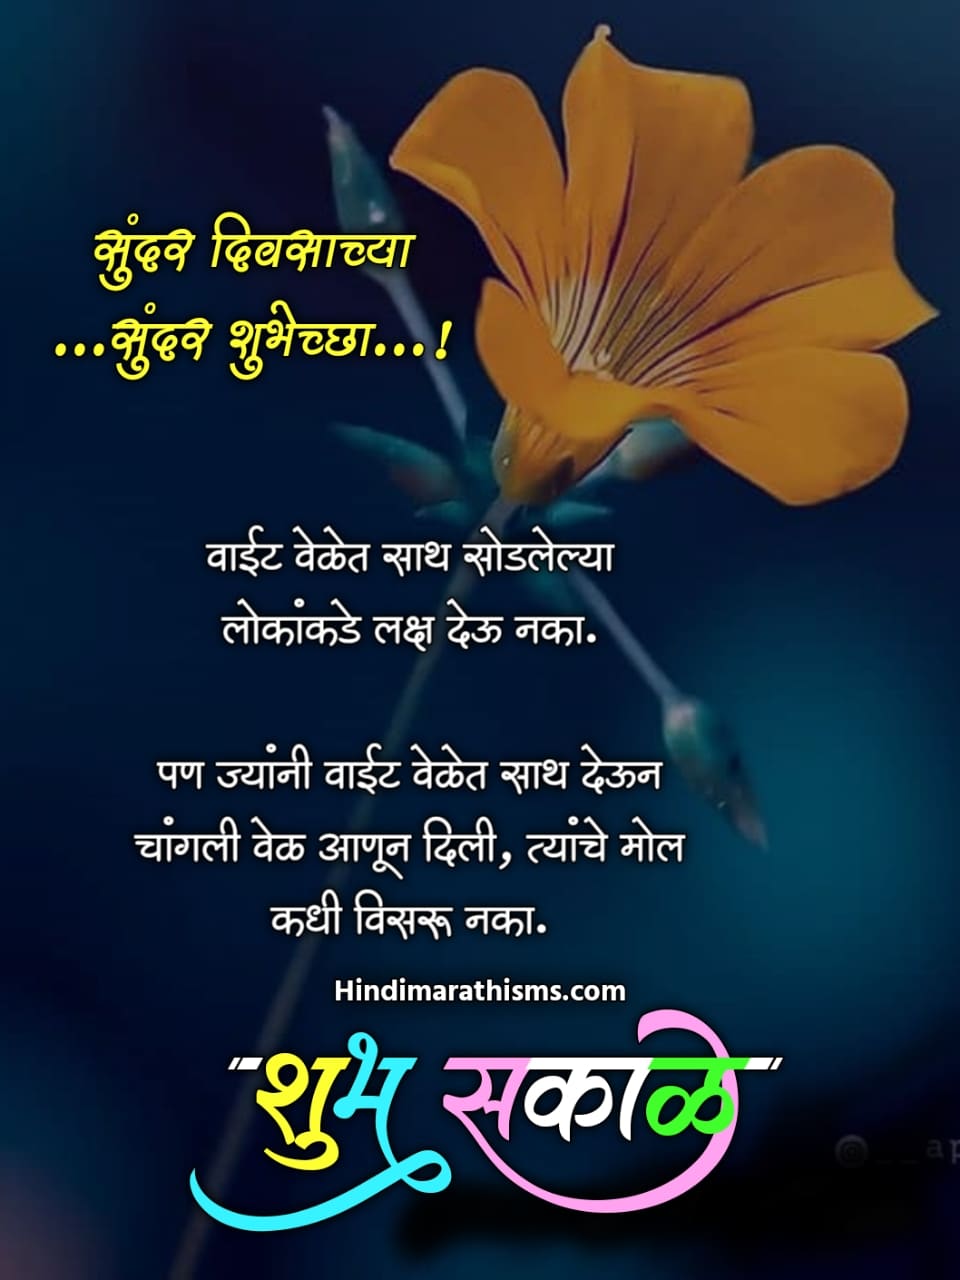 Good Morning Quotes Marathi 500 à¤¶ à¤­ à¤¸à¤ à¤³ à¤¸ à¤ª à¤°à¤­ à¤¤ à¤¸ à¤µ à¤ à¤° à¤®à¤° à¤  Shubh sakal week marathi images ( शुभ सकाळ आठवडा मराठी इमेजेस ) (43). good morning quotes marathi 500 à¤¶ à¤­ à¤¸à¤ à¤³ à¤¸ à¤ª à¤°à¤­ à¤¤ à¤¸ à¤µ à¤ à¤° à¤®à¤° à¤ 